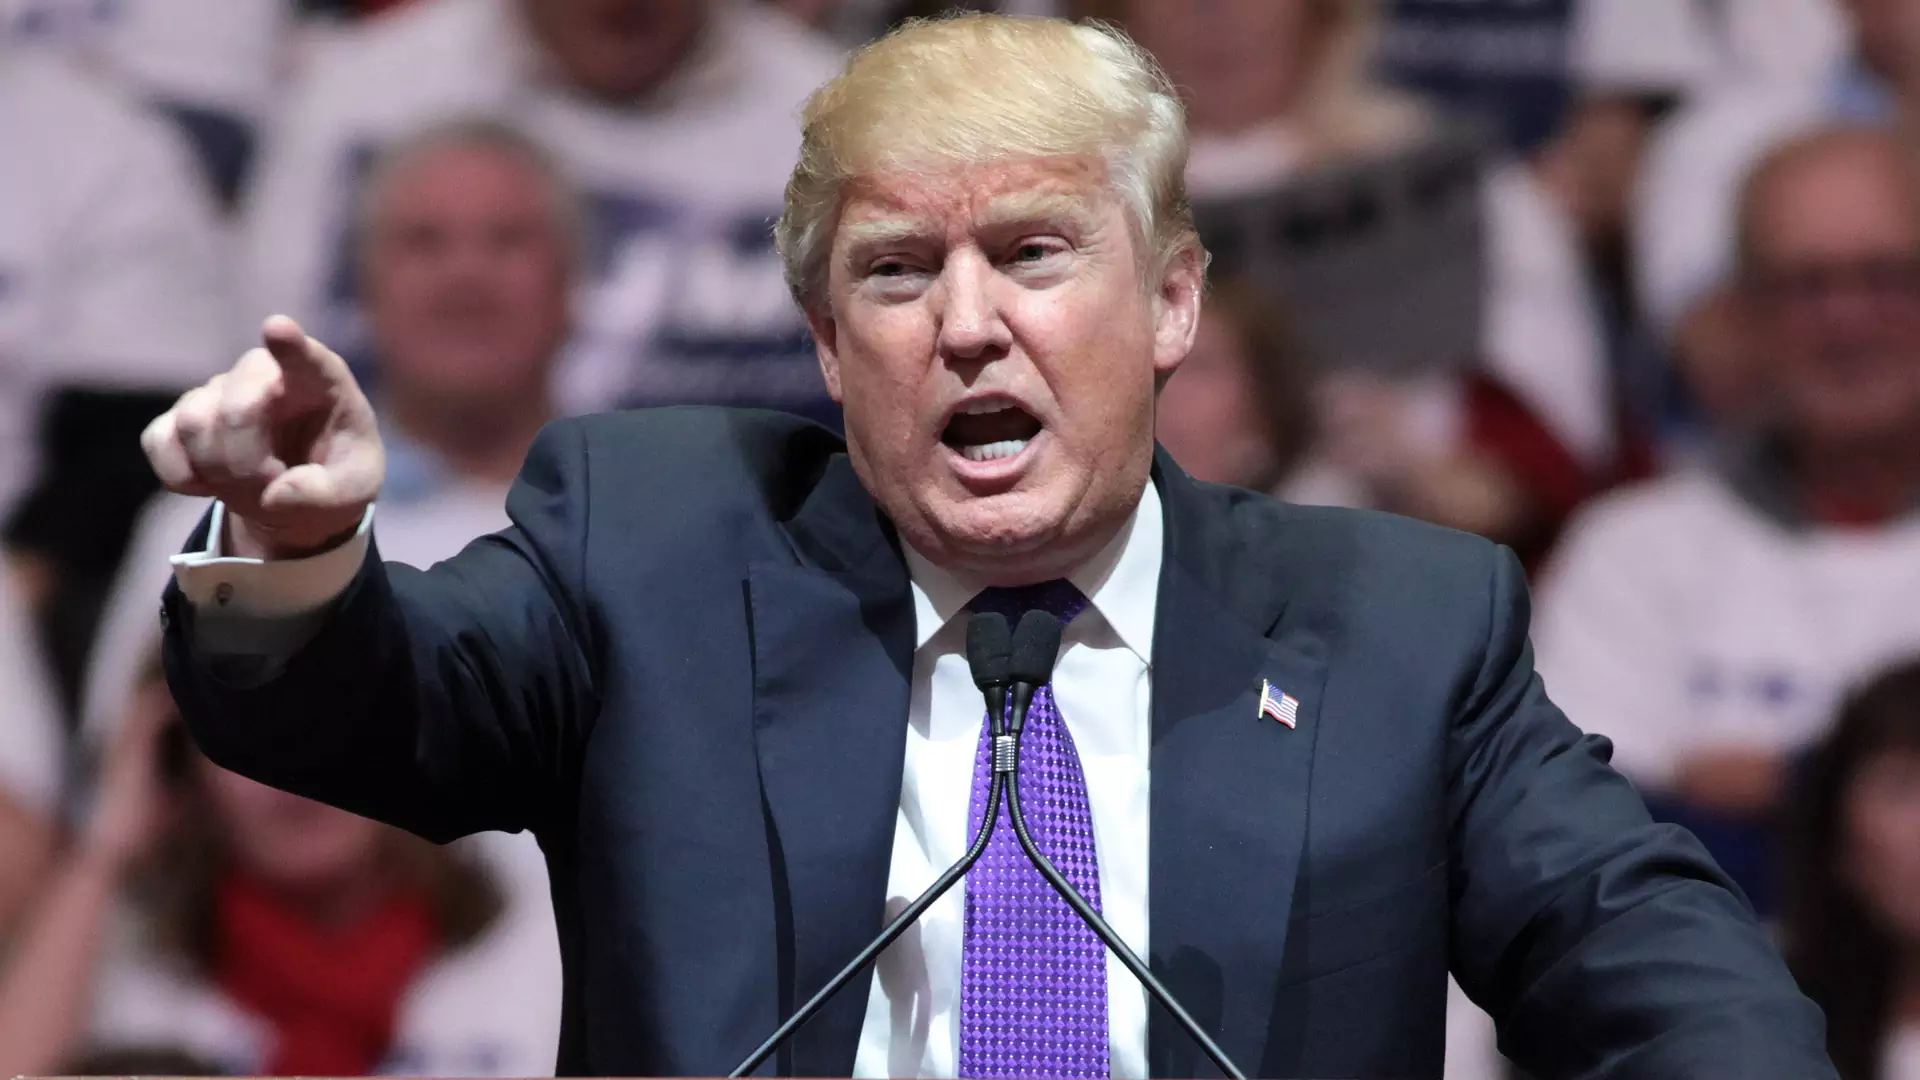 Ameryka wstrzymuje oddech: Donald Trump jest już prawie pewny zwycięstwa